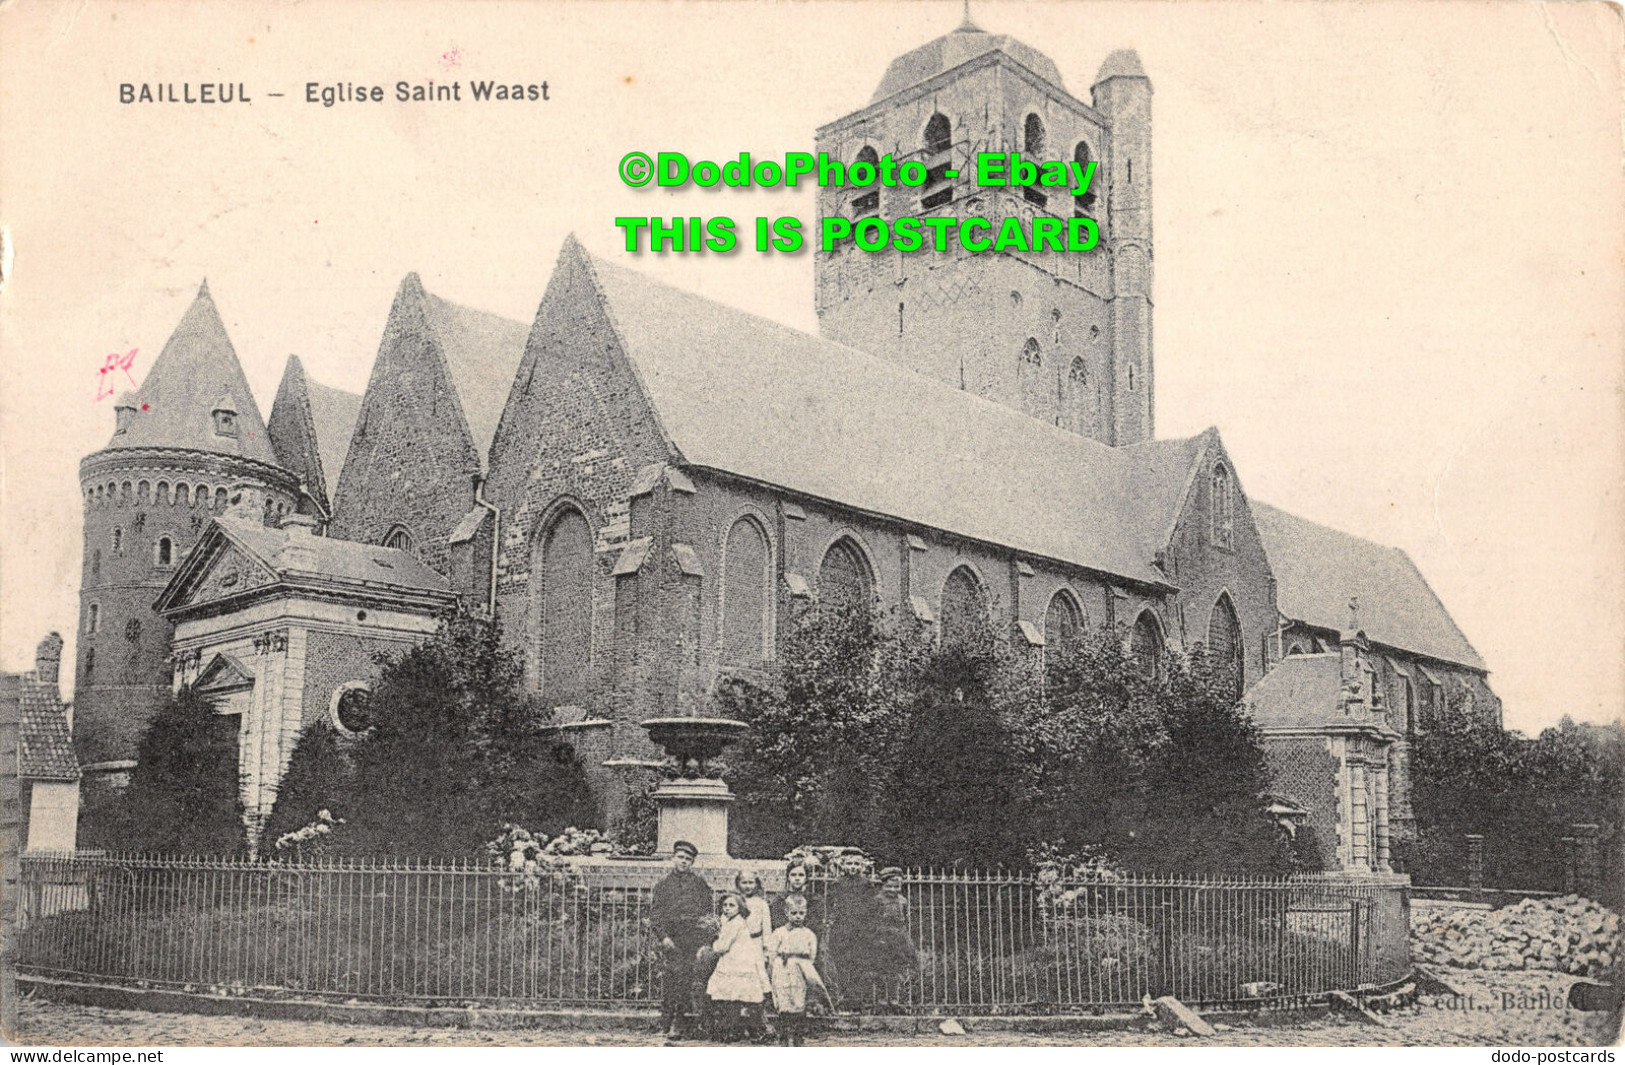 R413228 Bailleul. Eglise Saint Waast. Postcard. 1915 - World